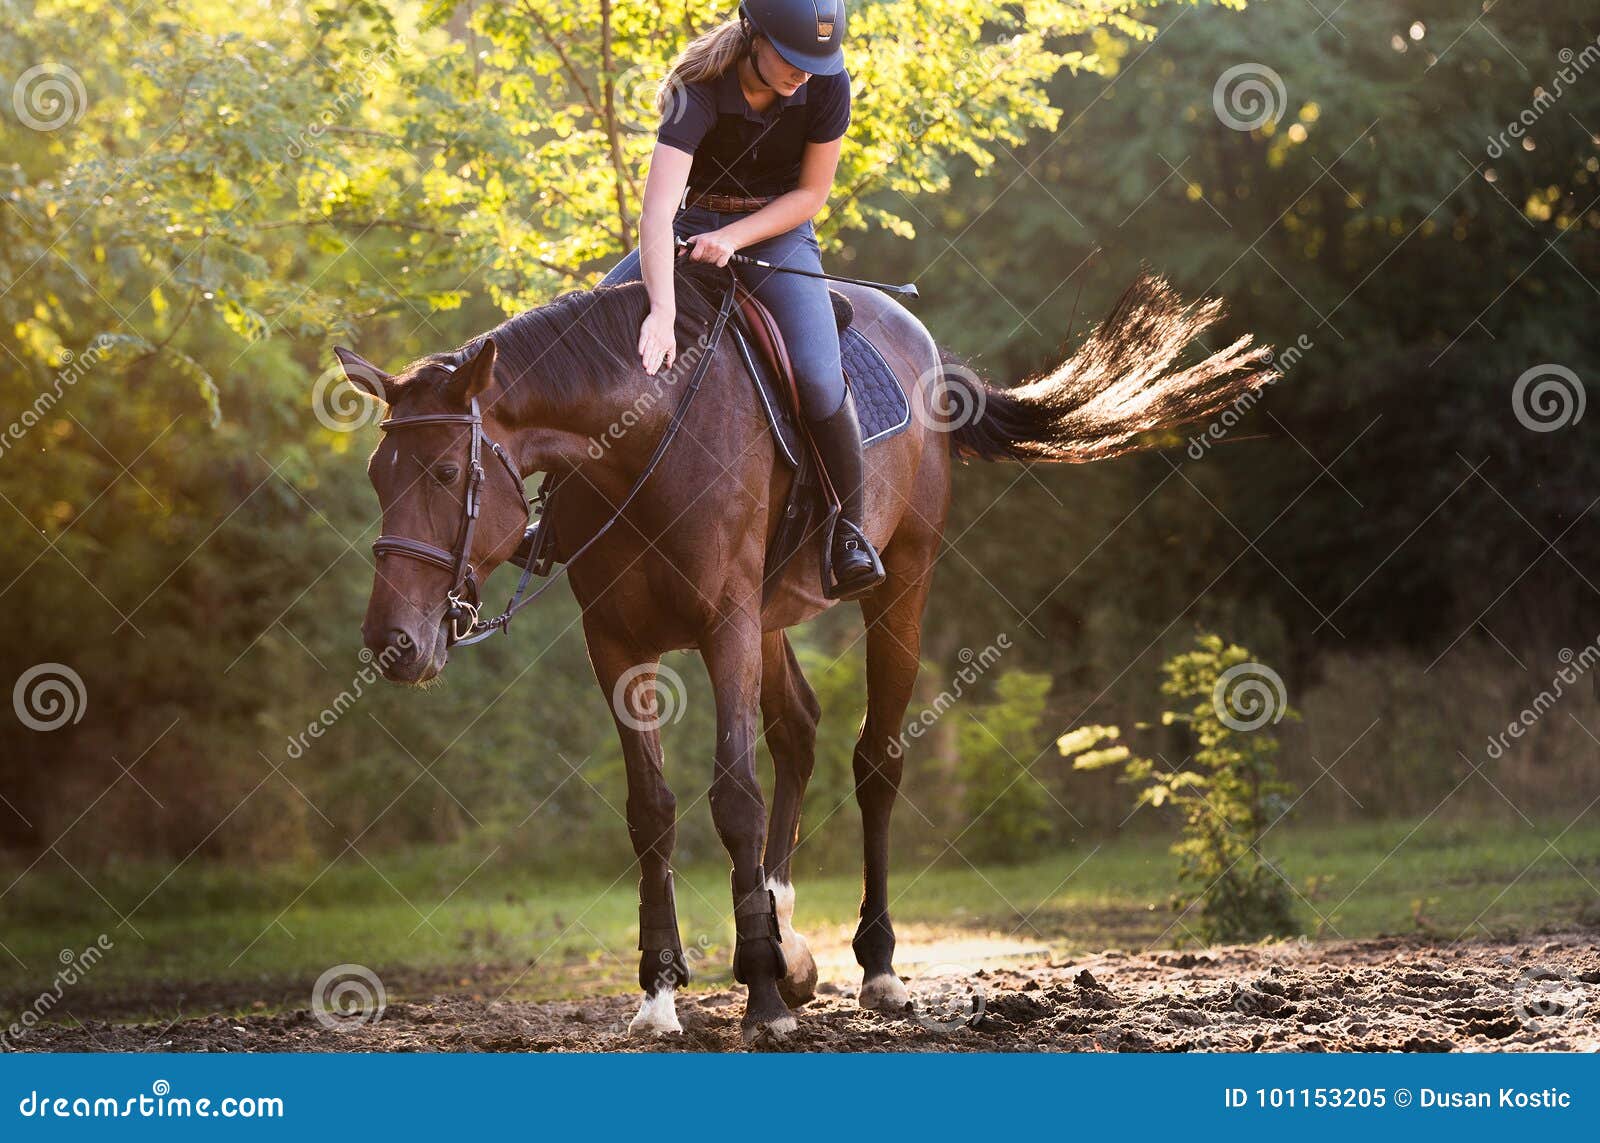 Мы вновь ехали на лошадях и любовались. Красивые девушки верхом. Ехать на лошади. Девушка верхом вид спереди. Девушка свисает с коня.